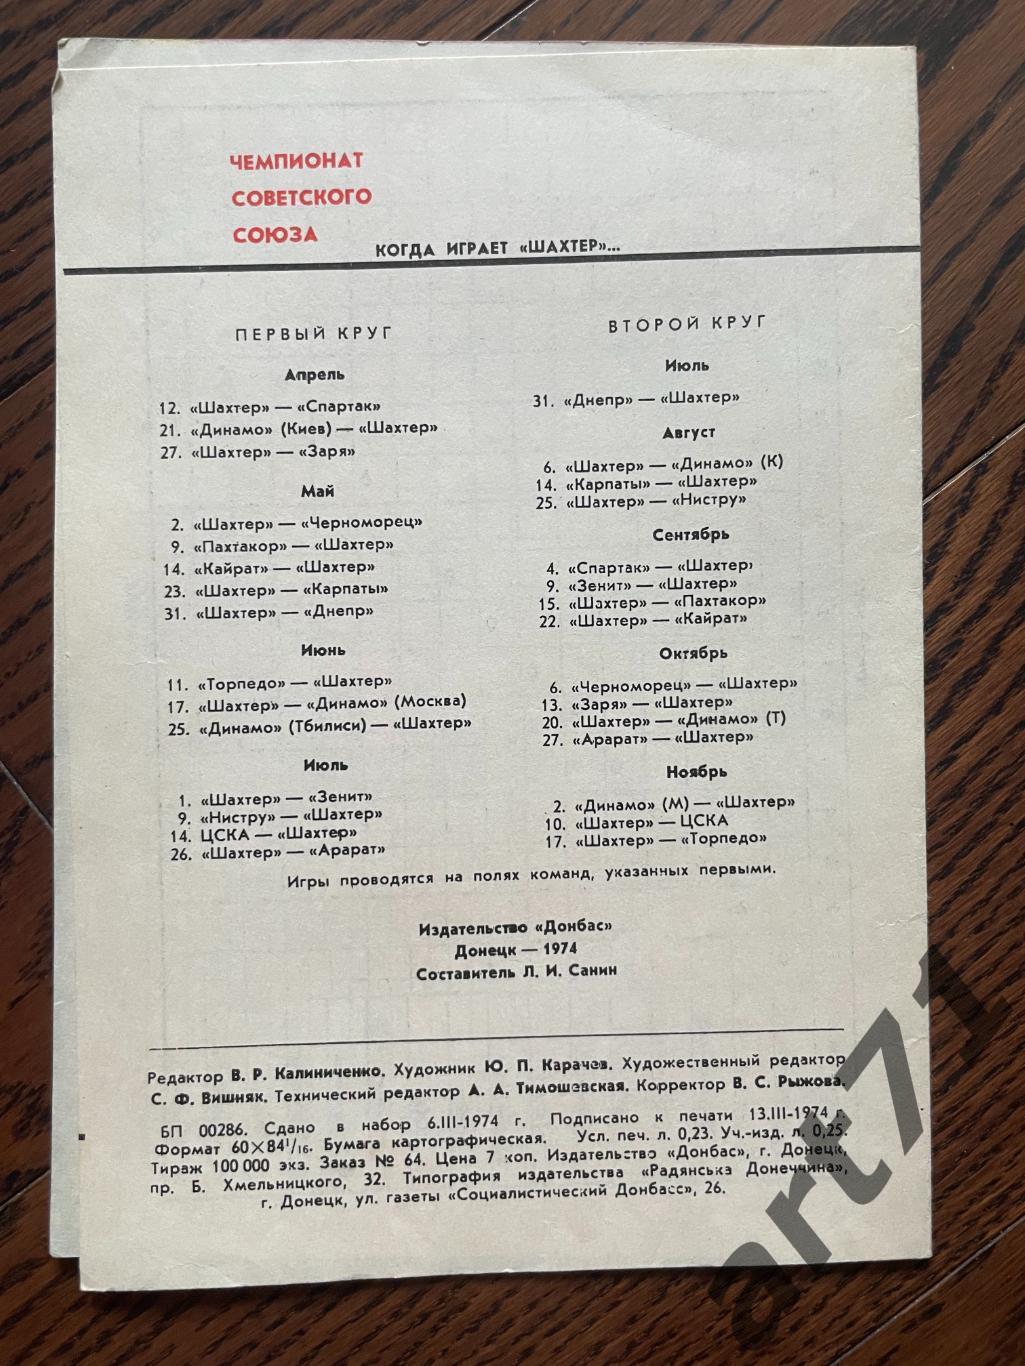 Шахтер Донецк 1974, таблица для заполнения, календарь игр 2